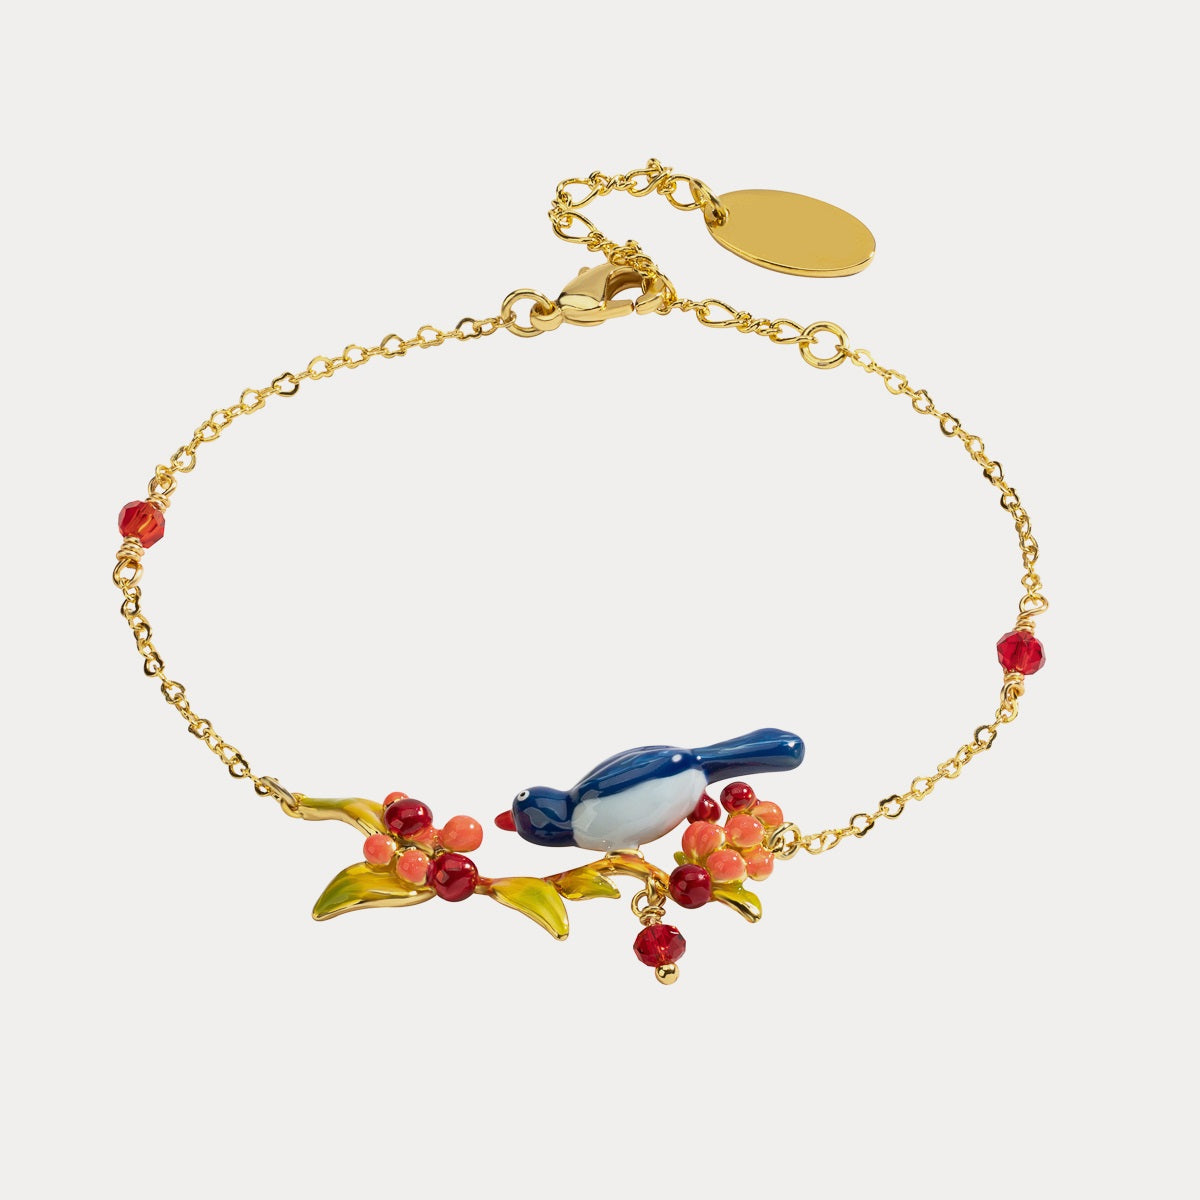 Selenichast pair of lovebirds bracelet